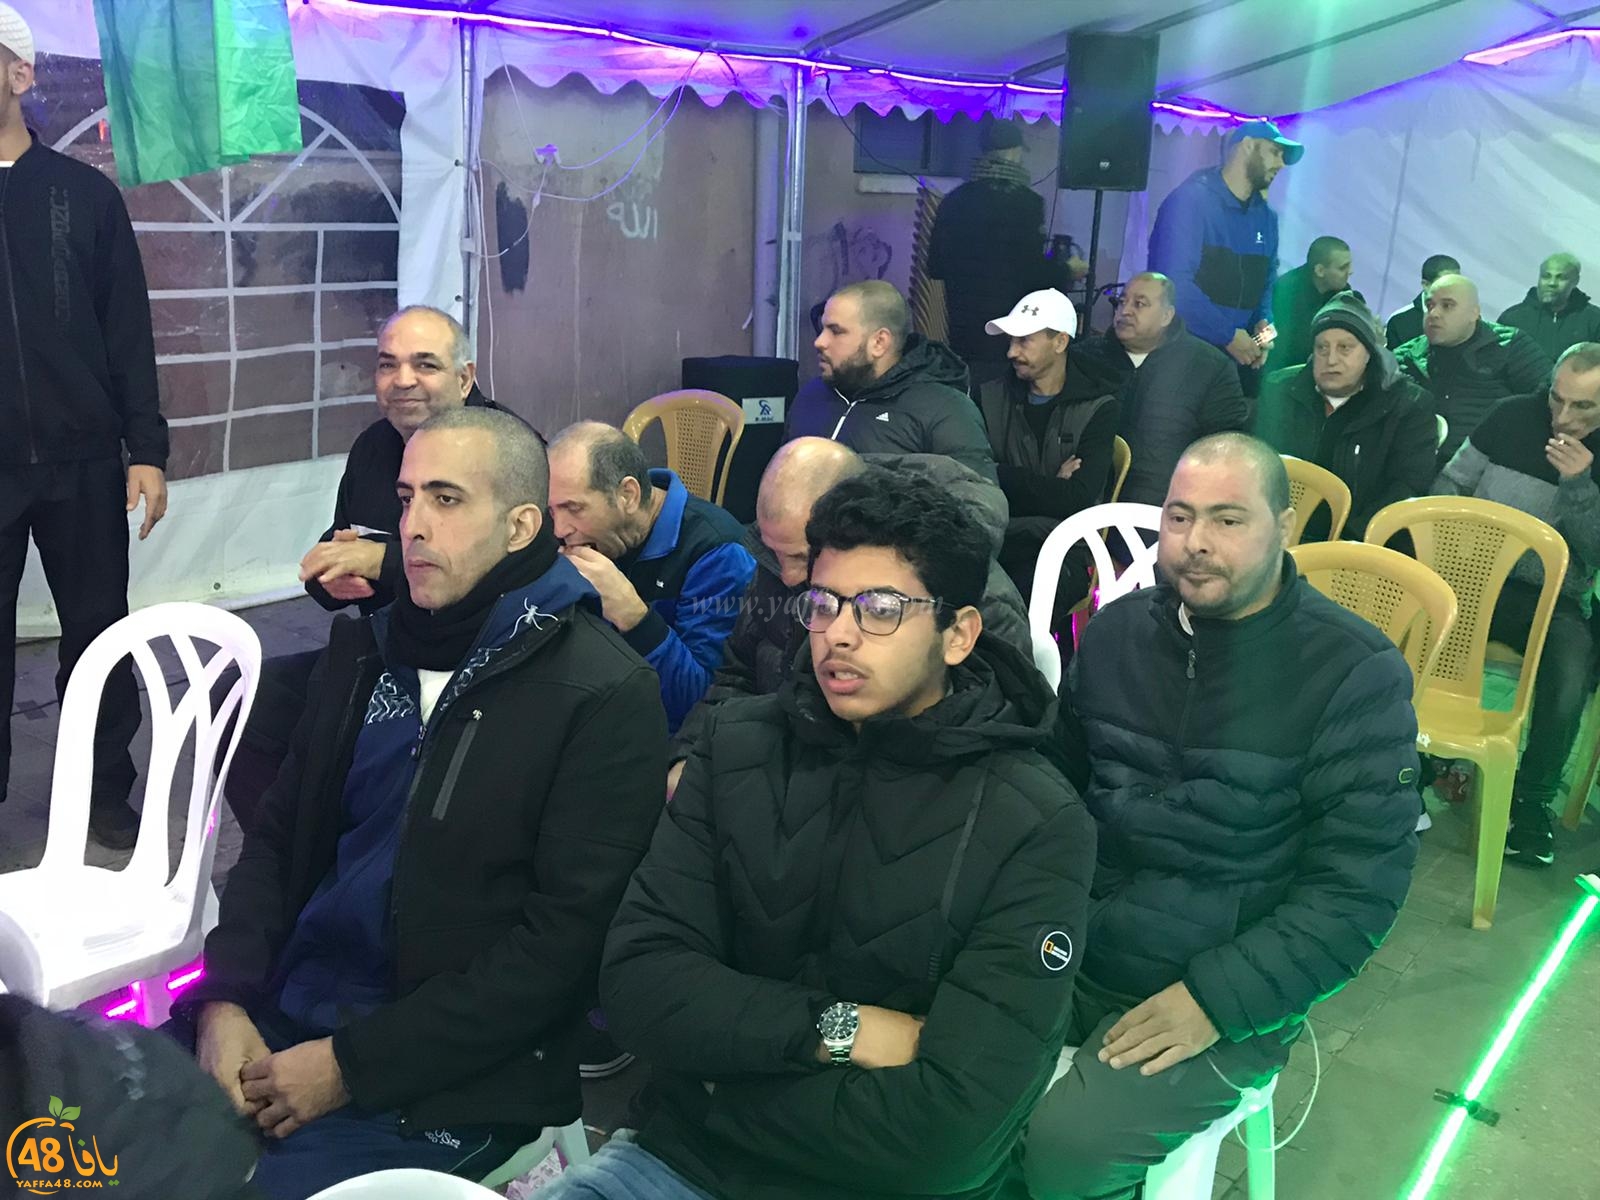  بالصور: خيمة الهدى تنظم أمسية دعوية في ضيافة عائلة مشهراوي بيافا